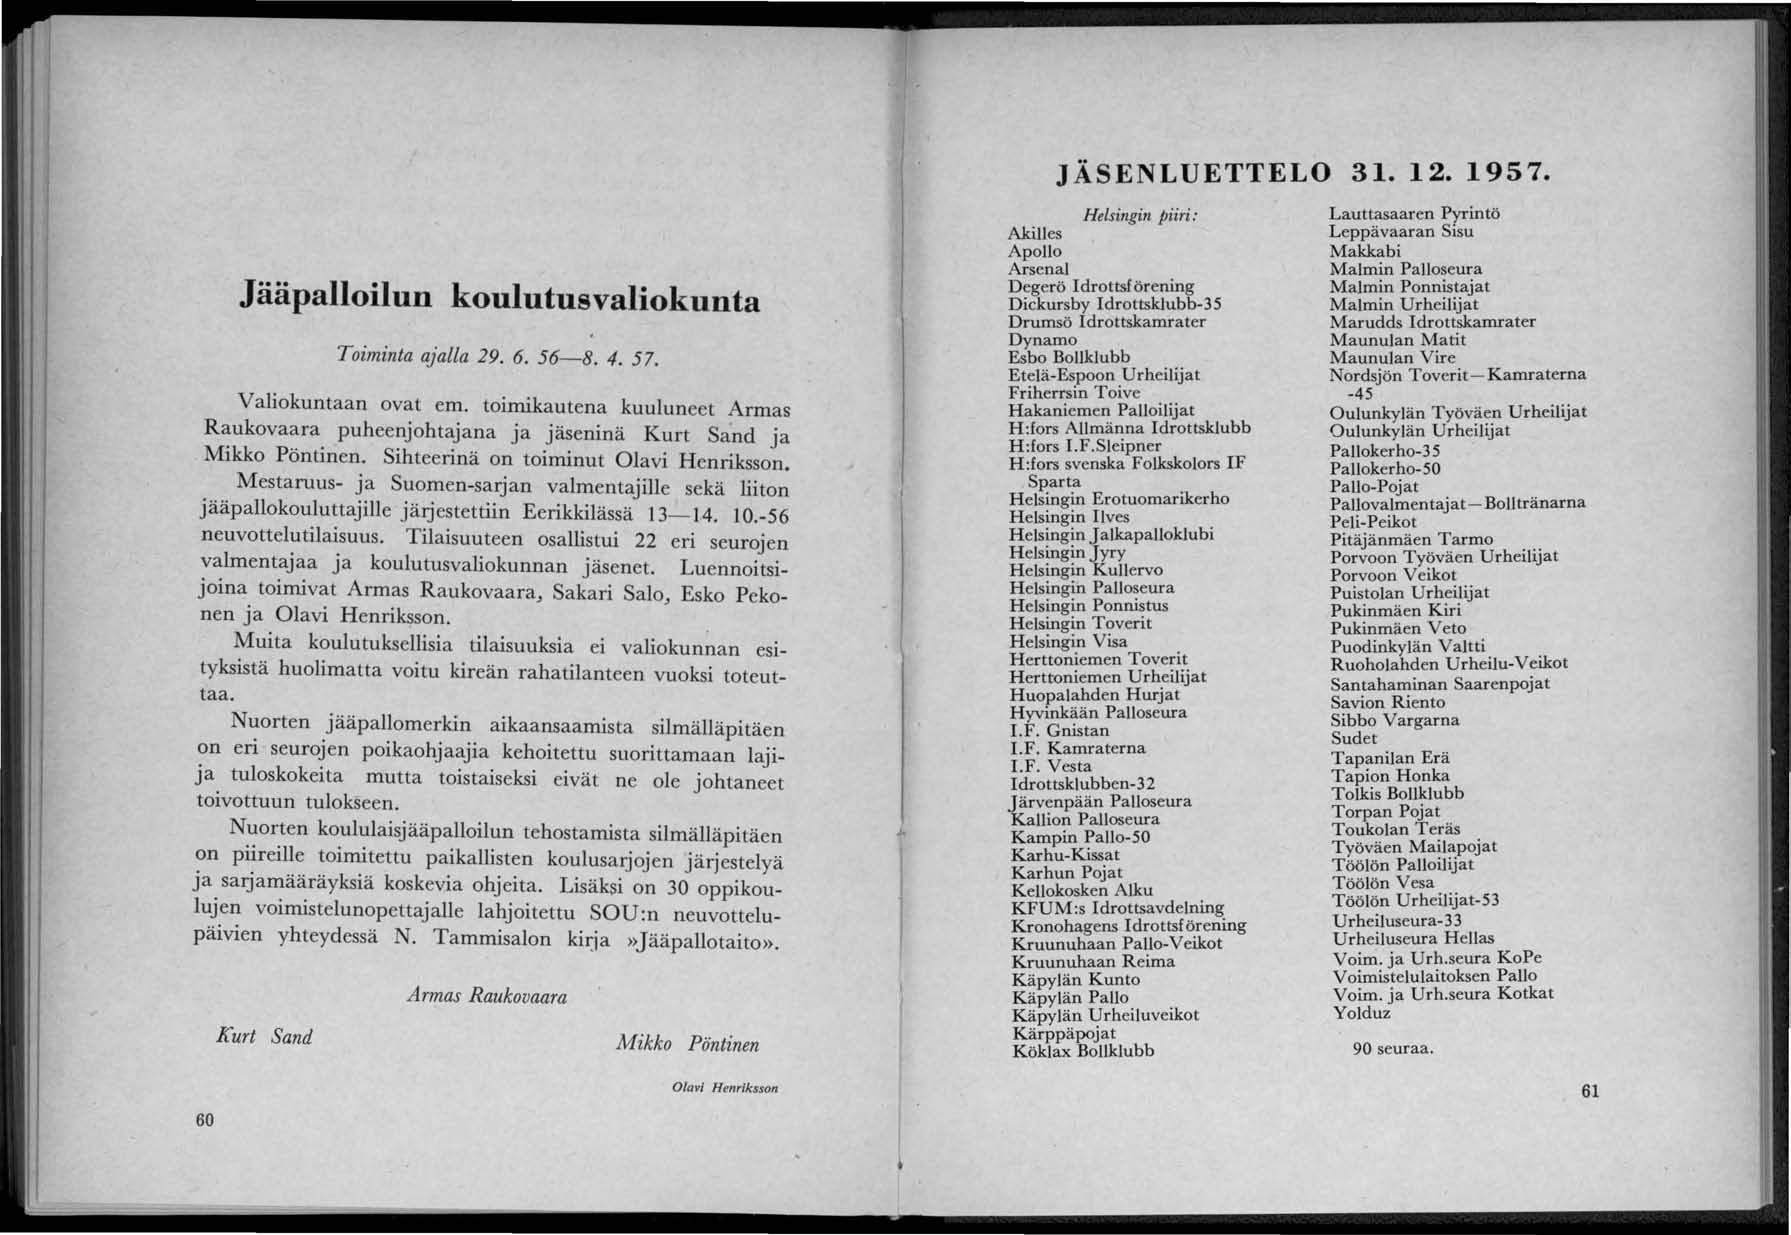 JÄSENLUETTELO 31.12.1957. Jääpalloilun koulutus valiokunta Toiminta ajalla 29. 6. 56-8. 4. 57.